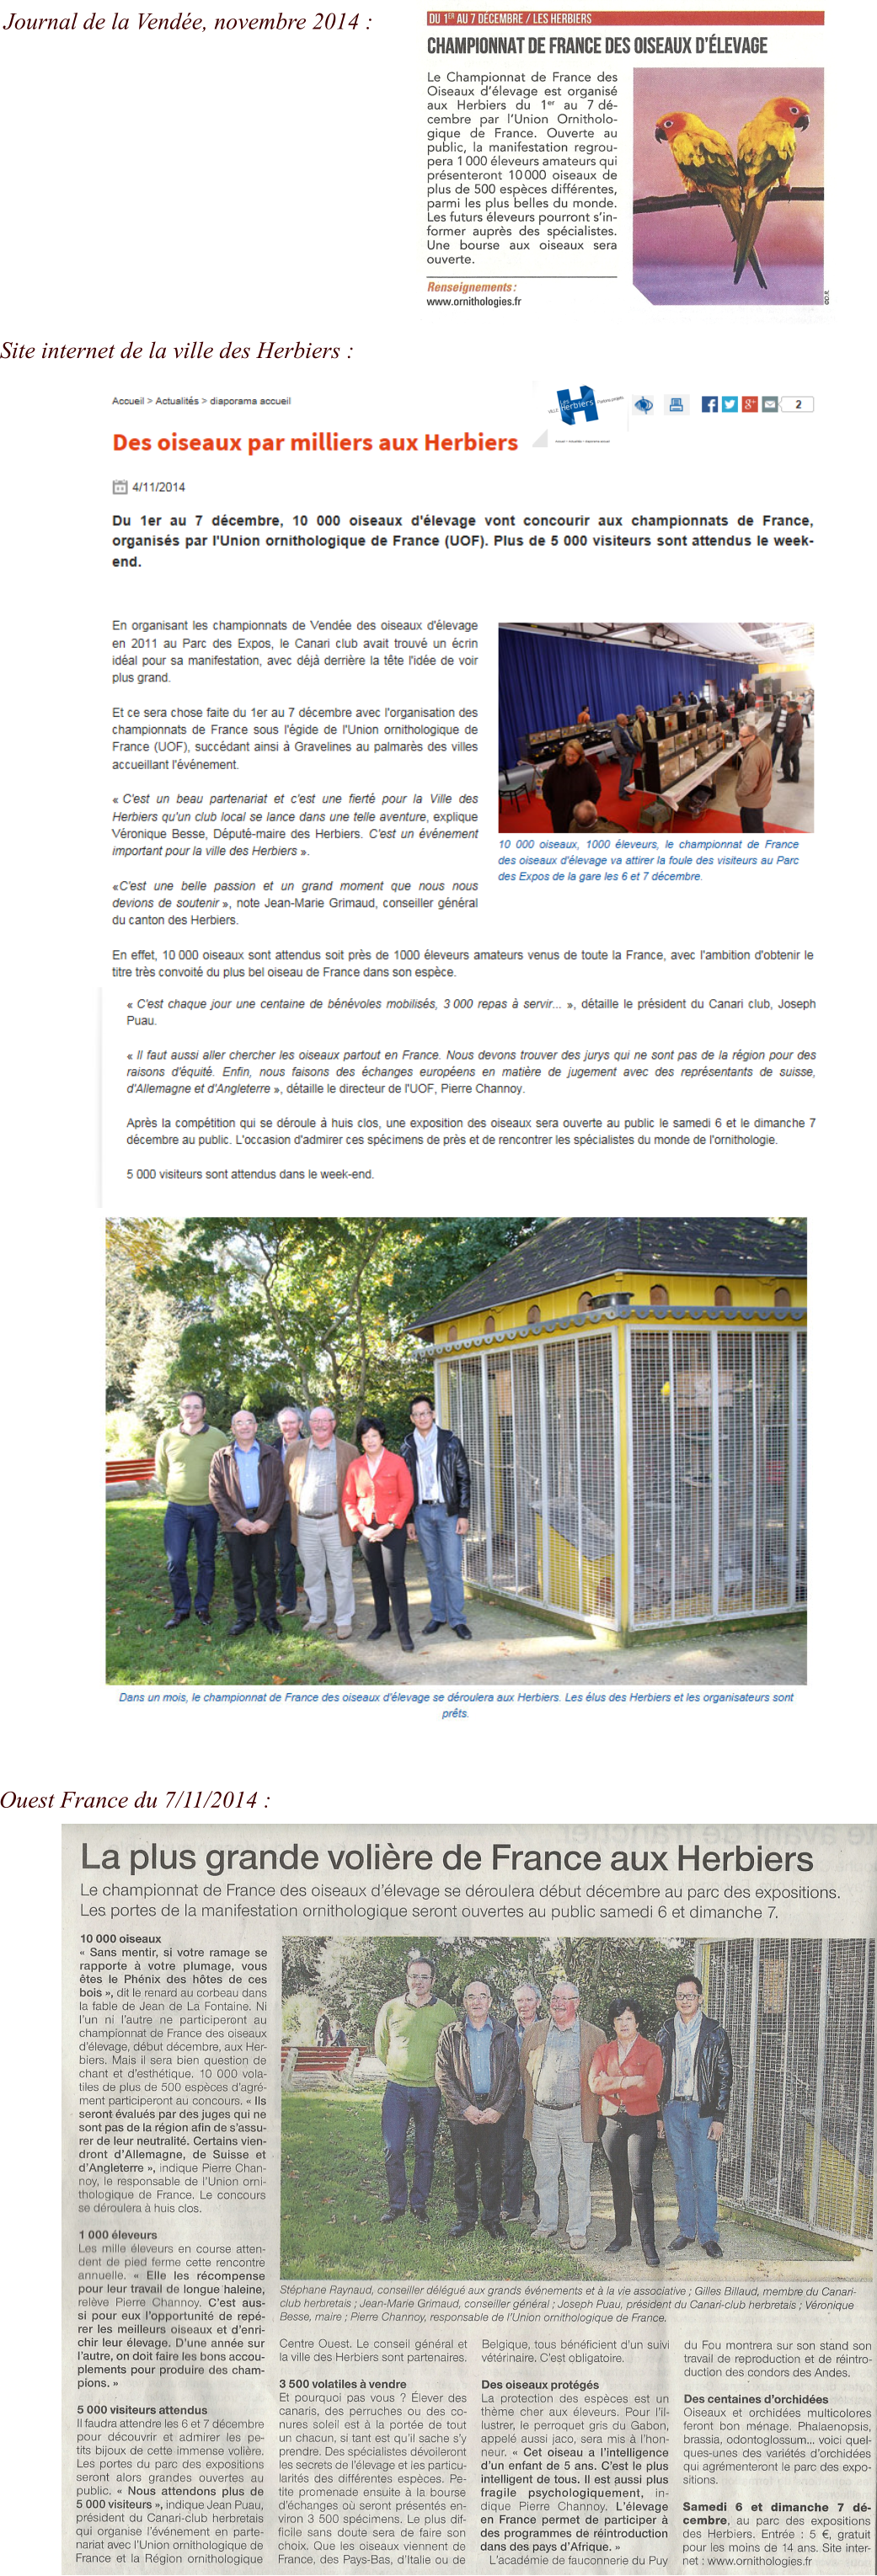 Site internet de la ville des Herbiers : Ouest France du 7/11/2014 :  Journal de la Vendée, novembre 2014 :